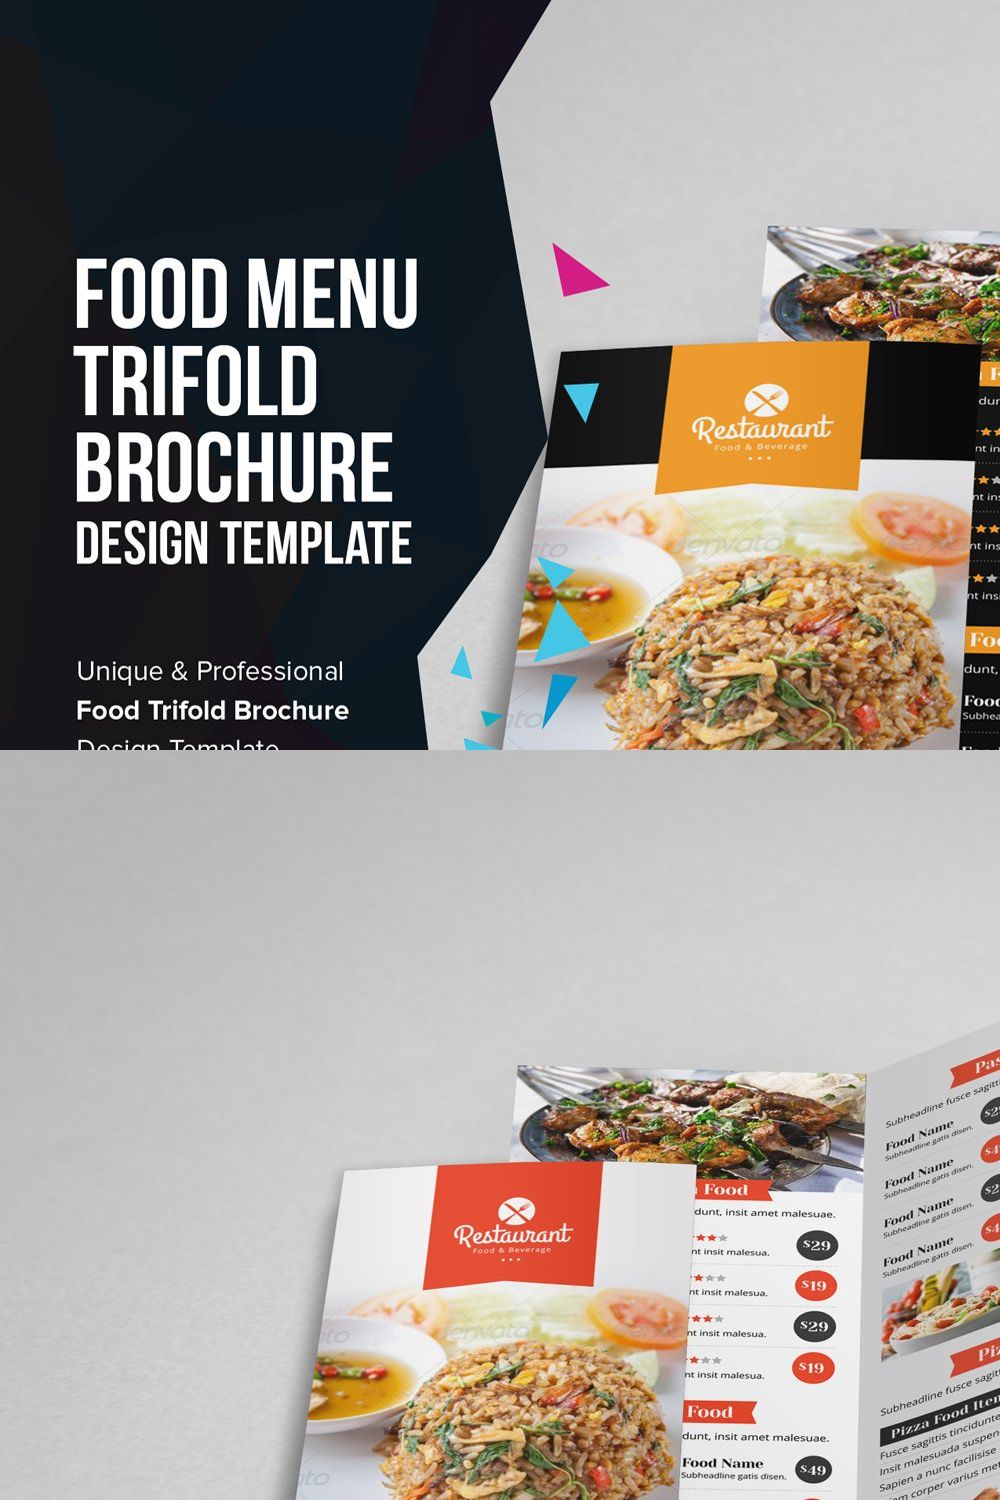 Food Menu Trifold Brochure v1 pinterest preview image.